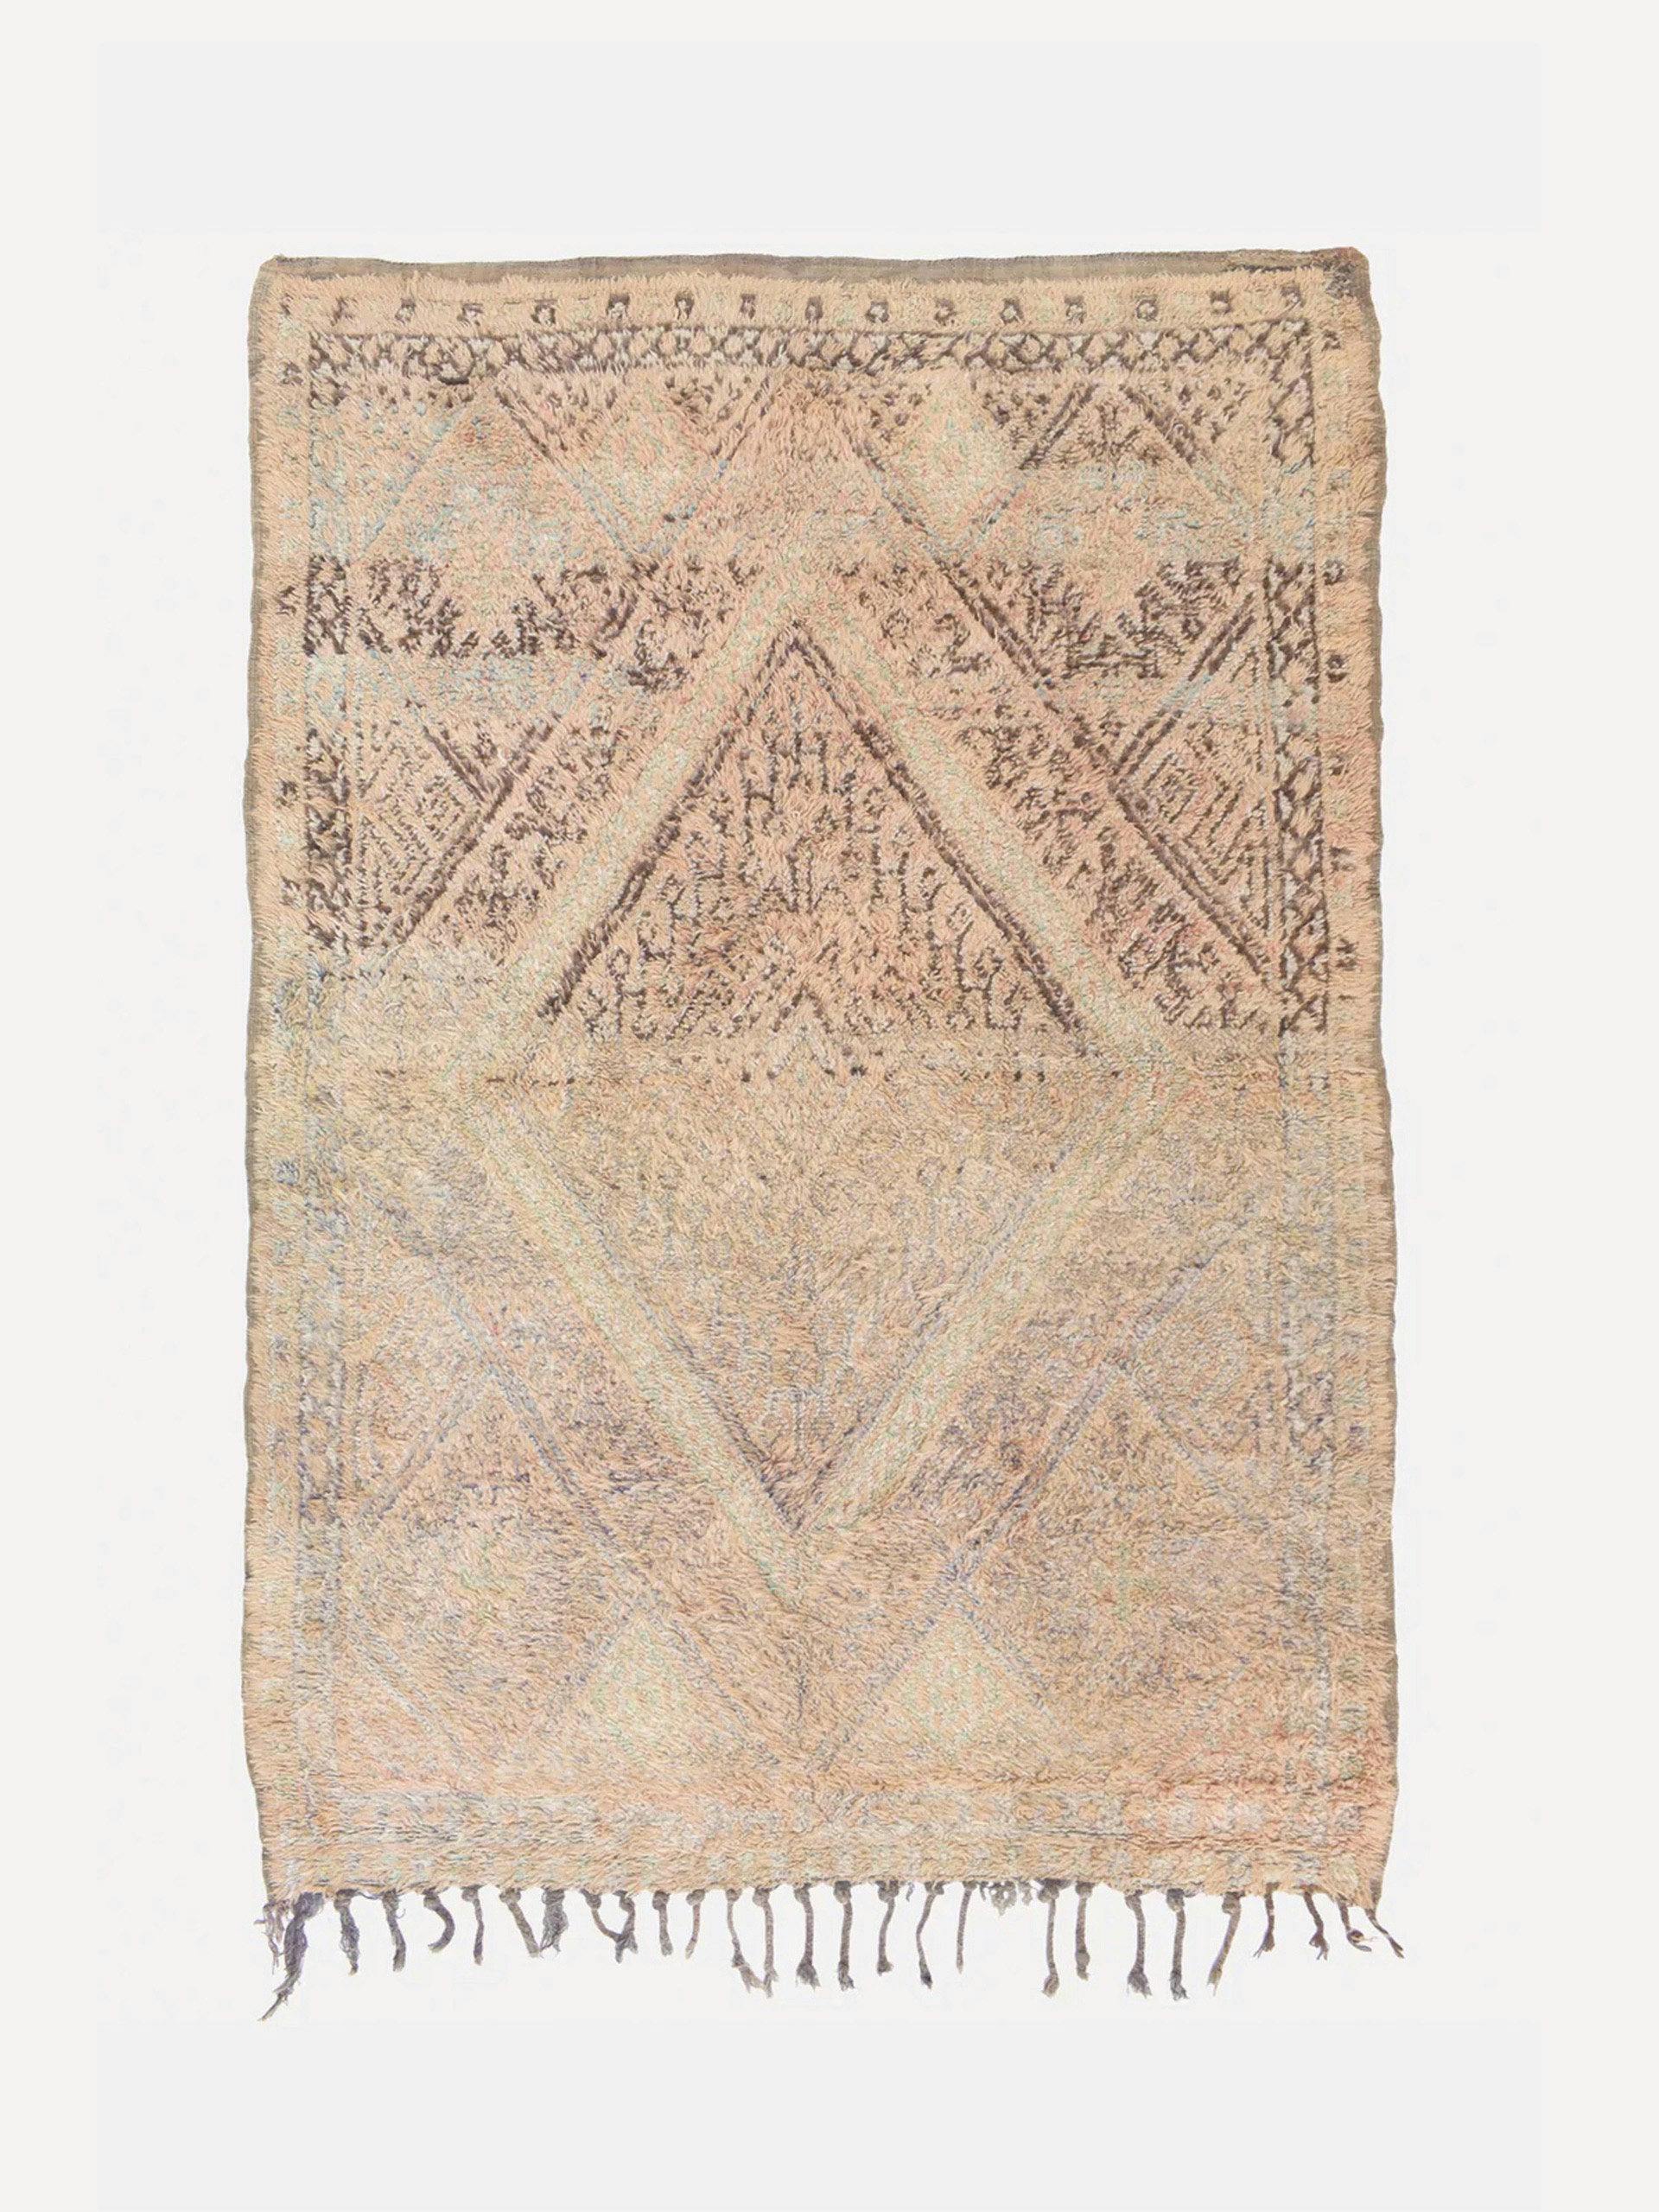 Beni M'guild vintage handwoven rug